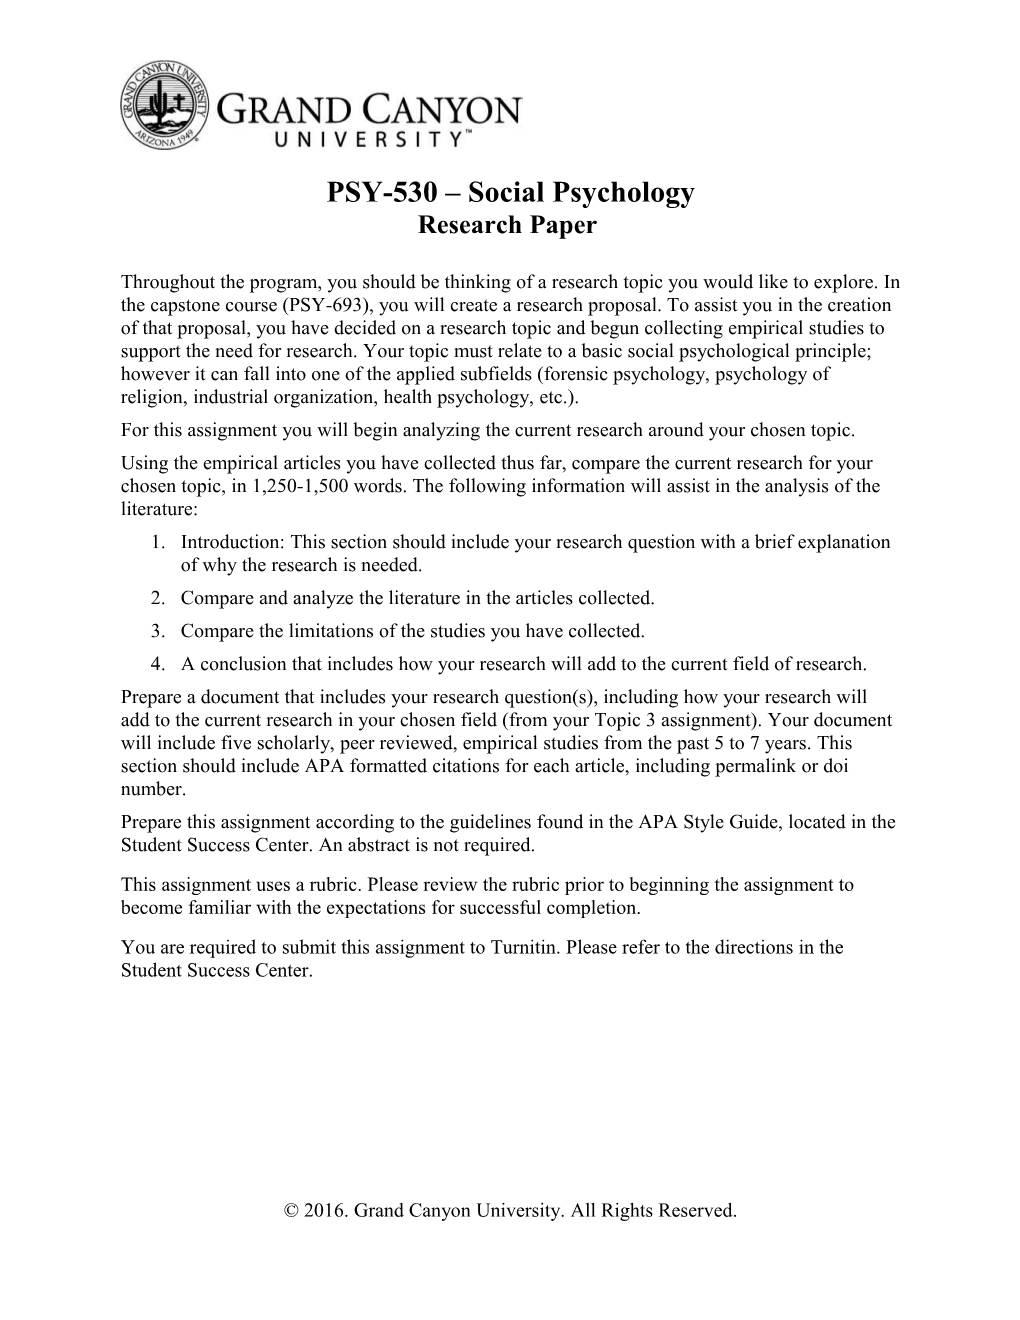 PSY-530 Social Psychology